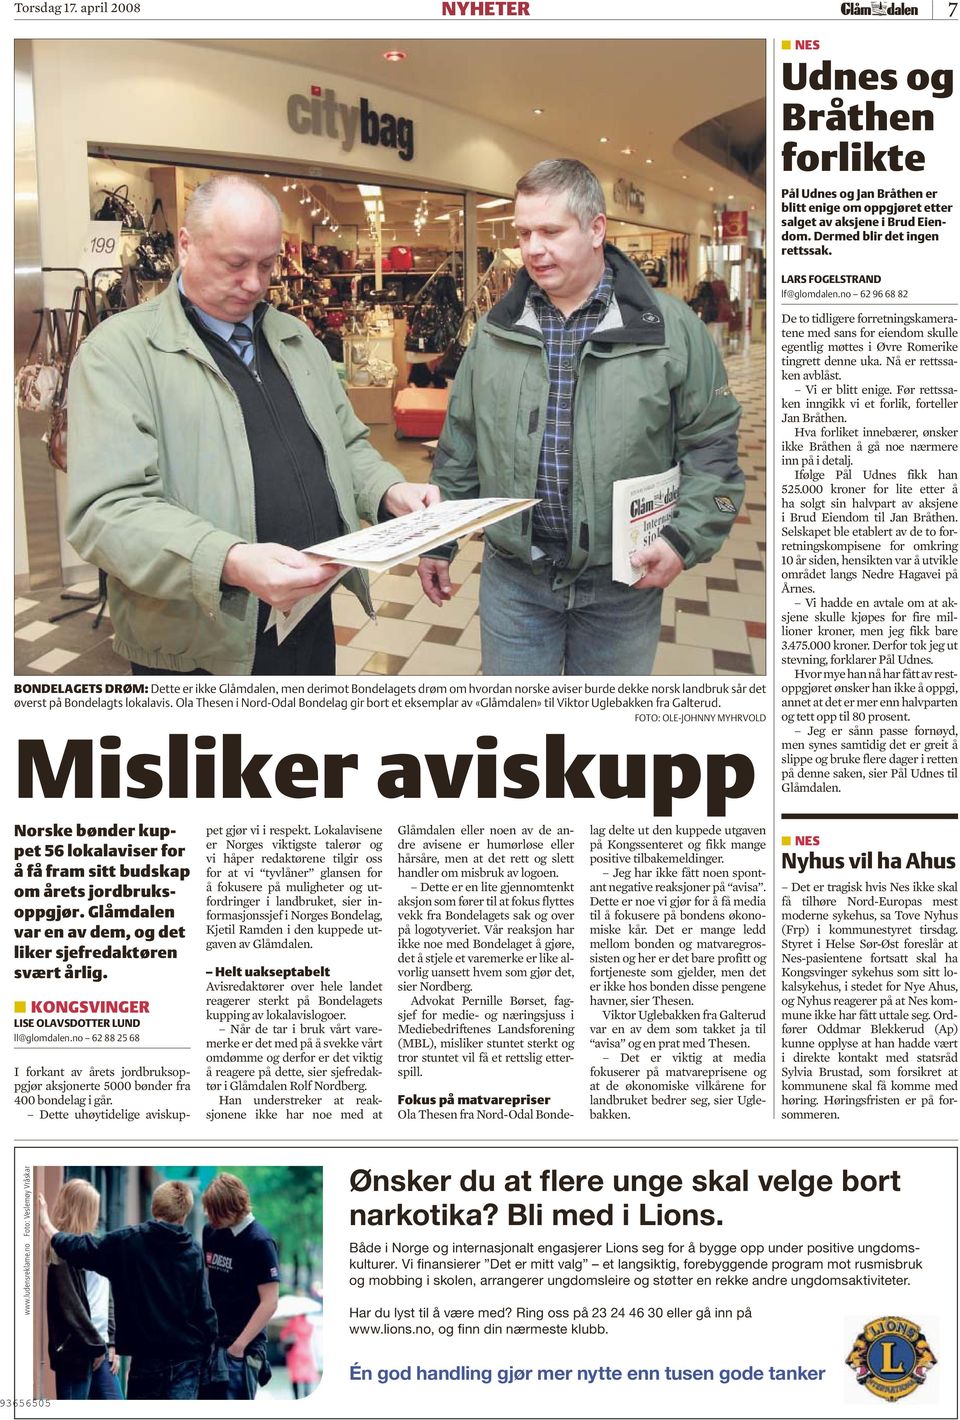 Ola Thesen i Nord-Odal Bondelag gir bort et eksemplar av «Glåmdalen» til Viktor Uglebakken fra Galterud. FOTO: OLE-JOHNNY MYHRVOLD Misliker aviskupp LARS FOGELSTRAND lf@glomdalen.